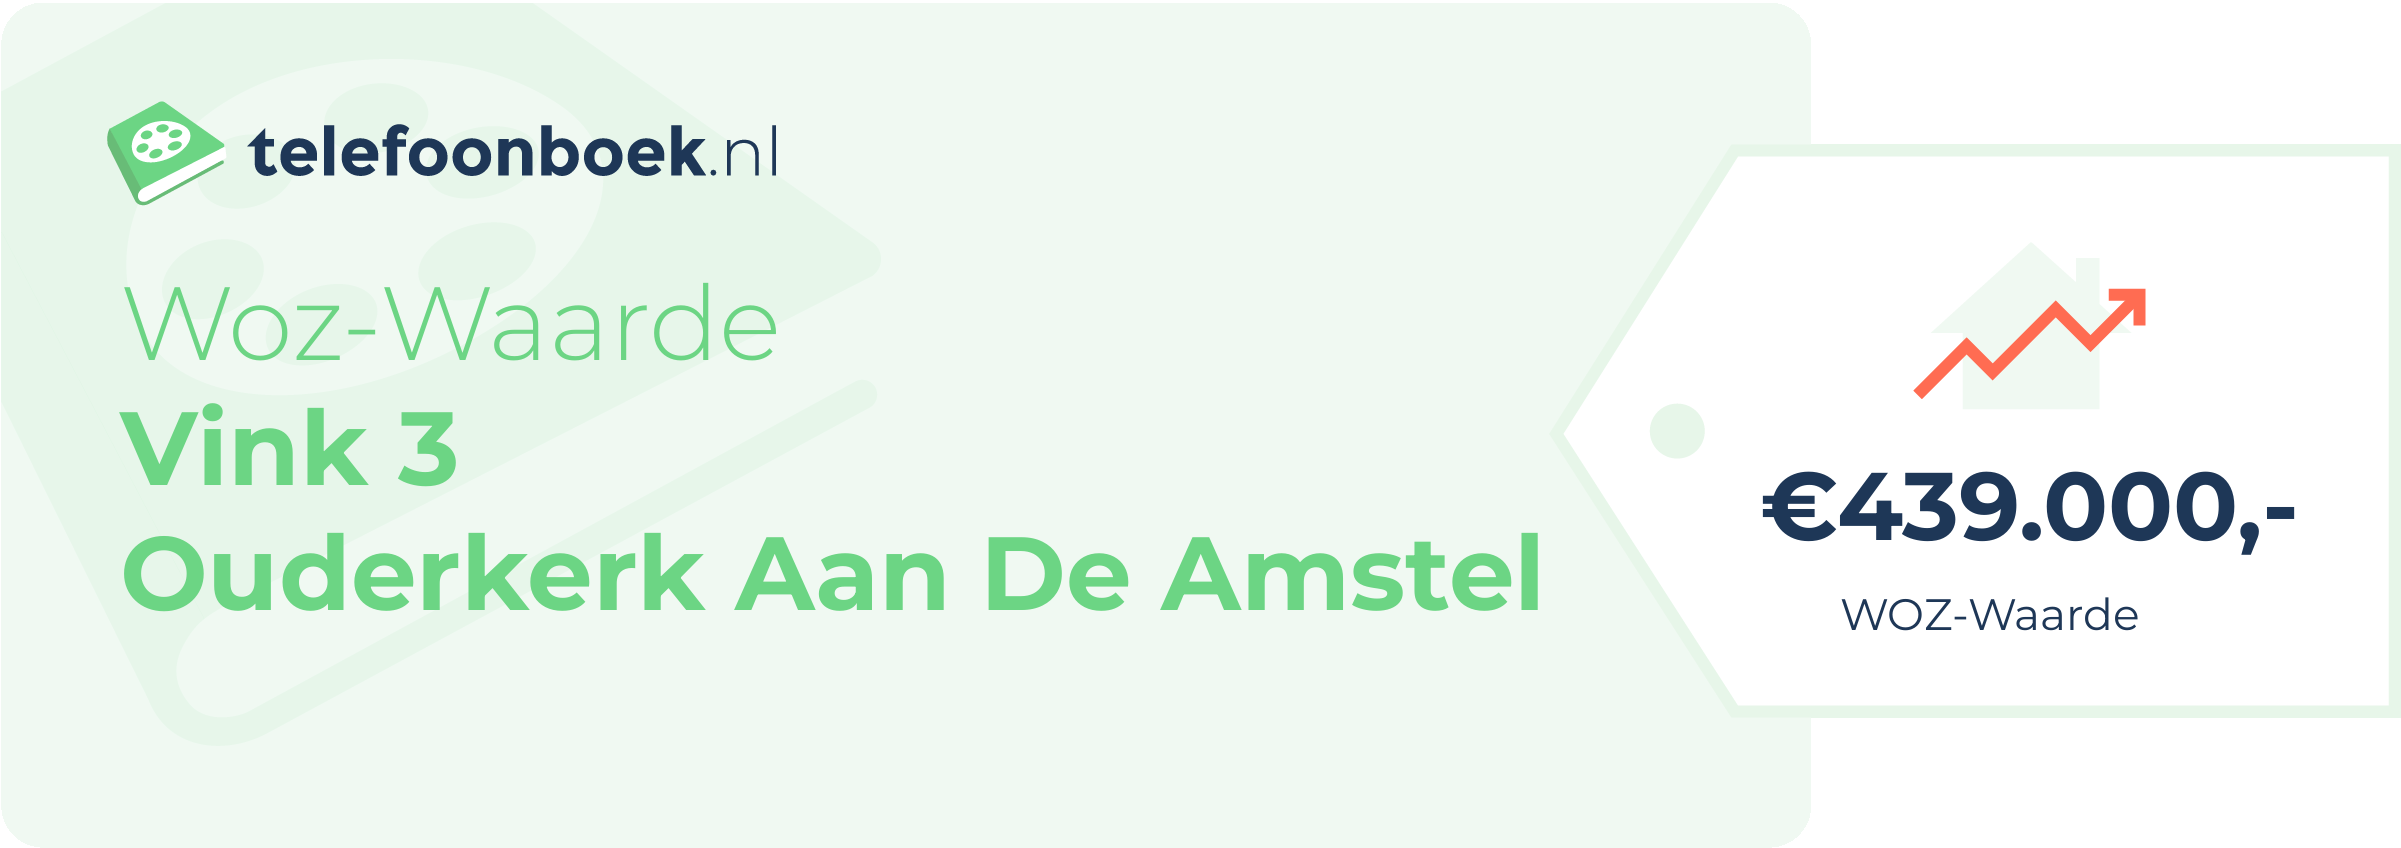 WOZ-waarde Vink 3 Ouderkerk Aan De Amstel